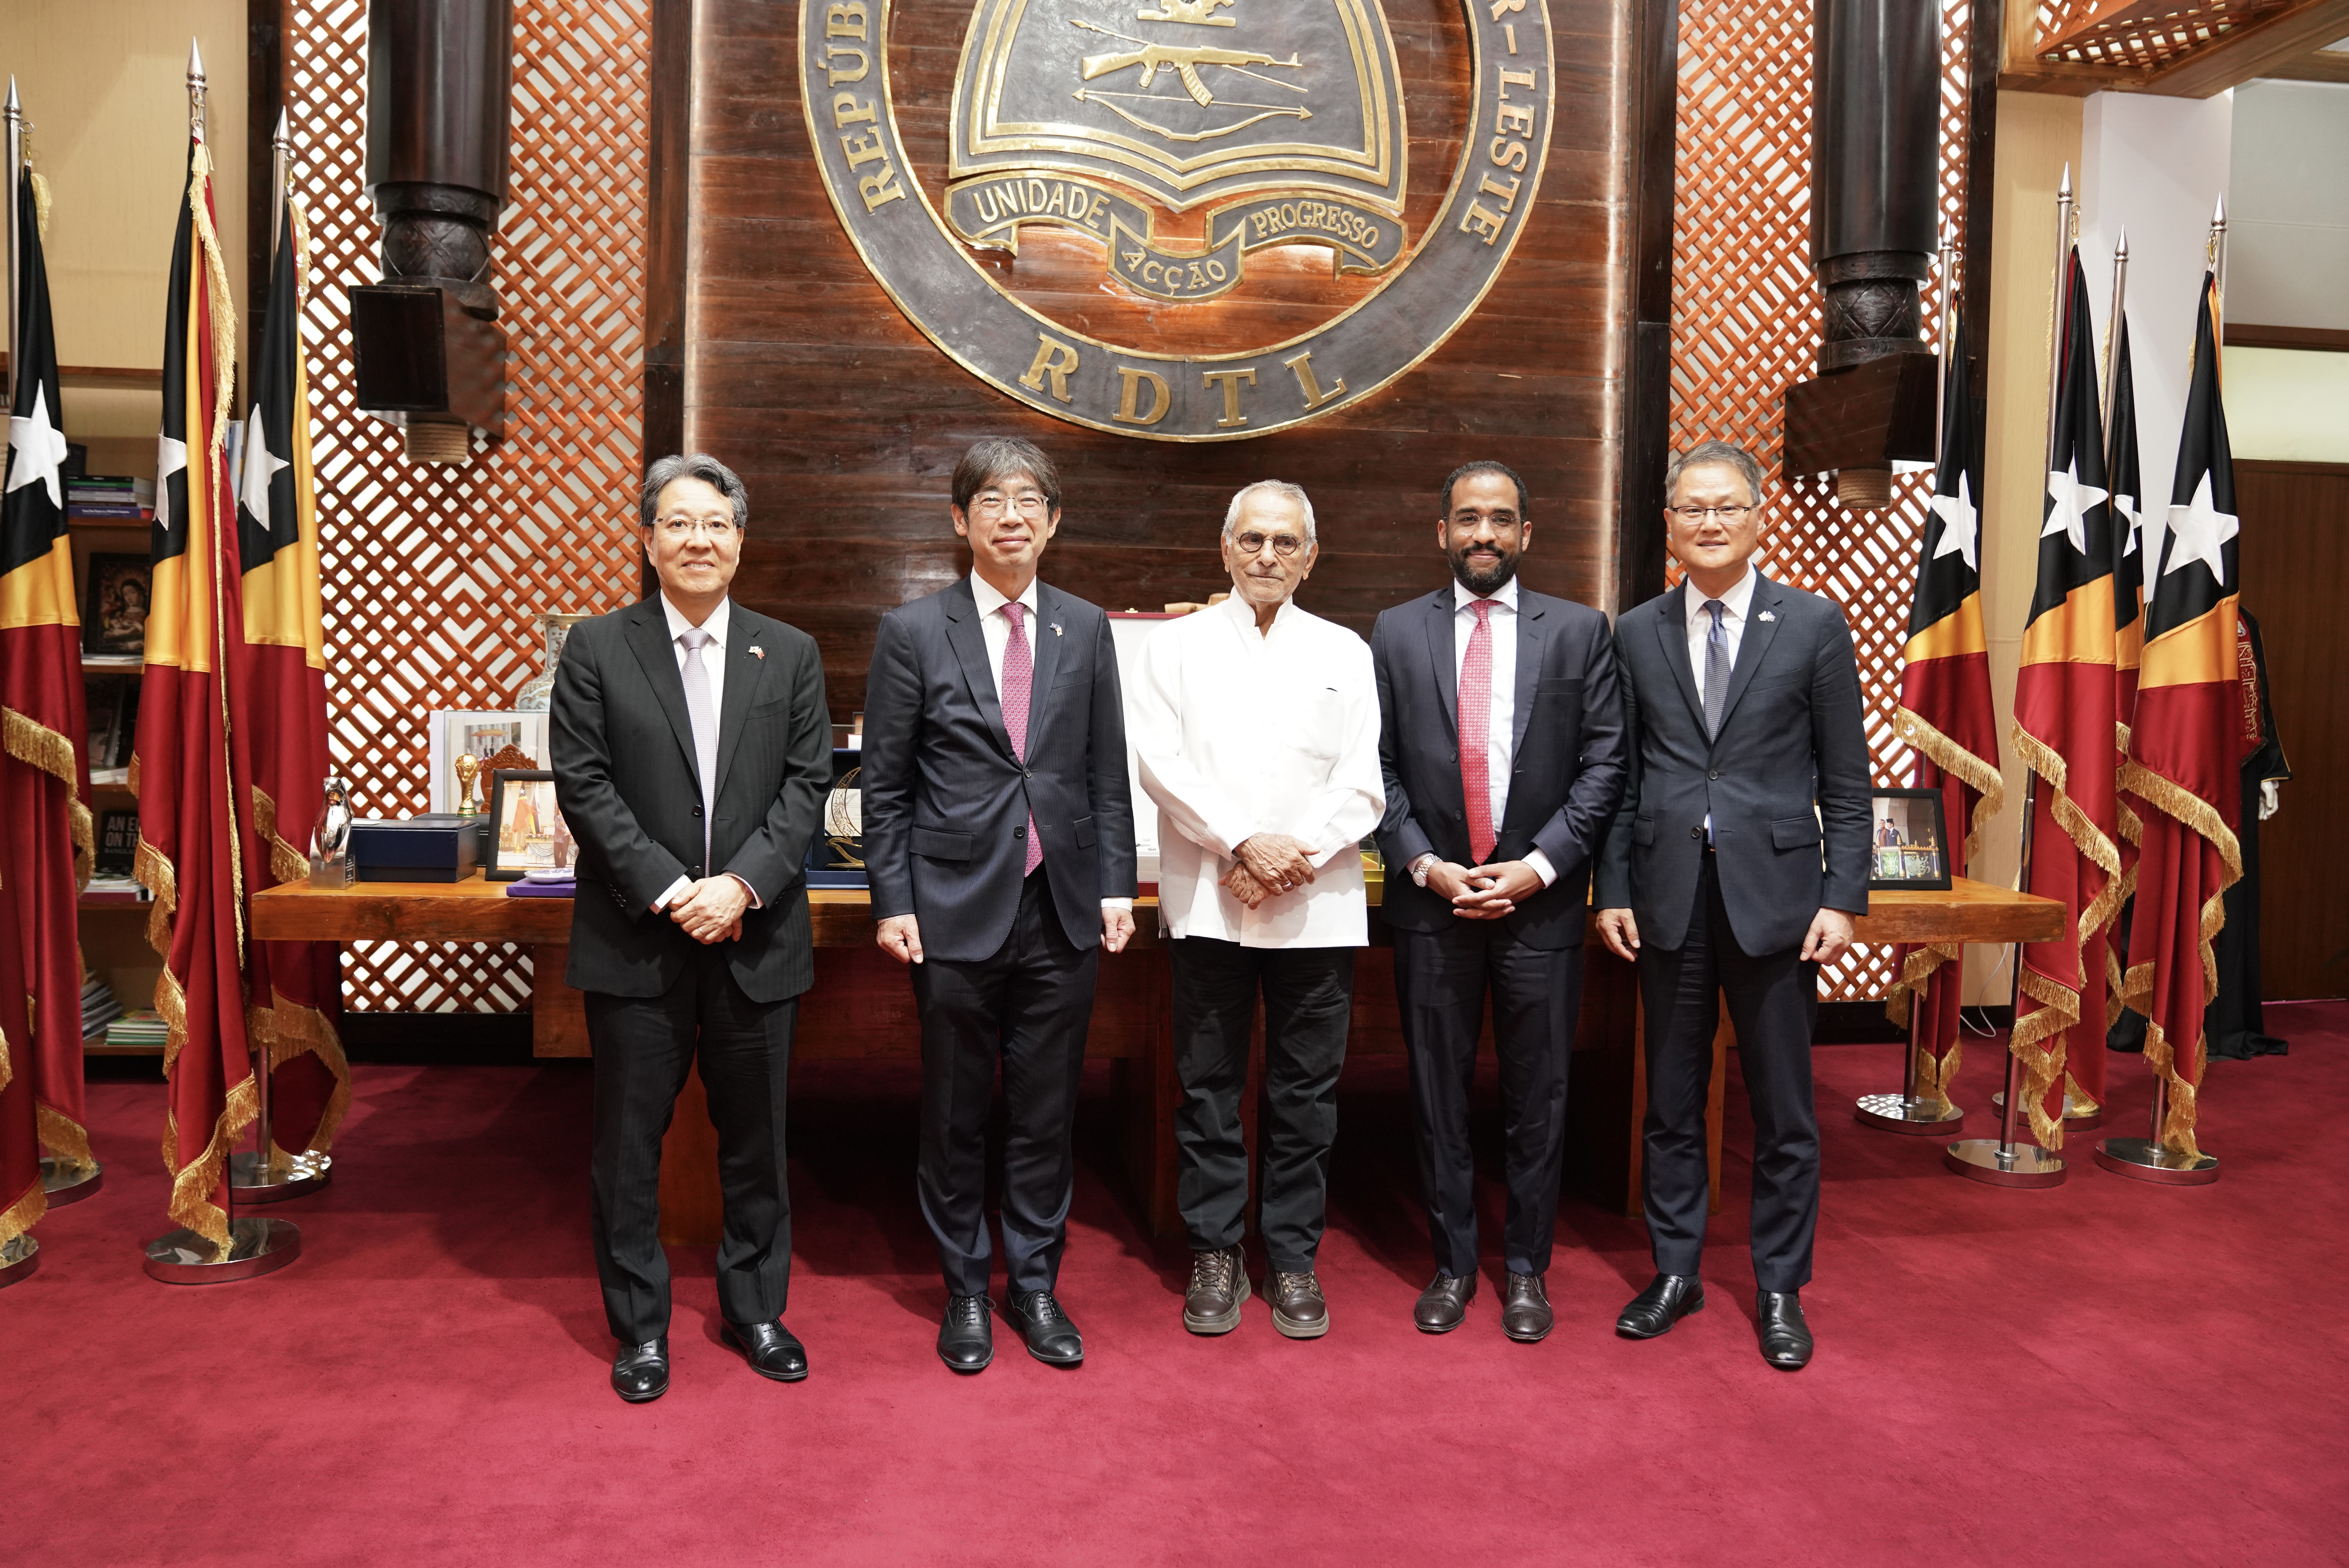 이장근 주아세안 대사, 주아세안 미국 및 일본 대사와 함께 동티모르 방문 결과 (6.19~21, 동티모르)